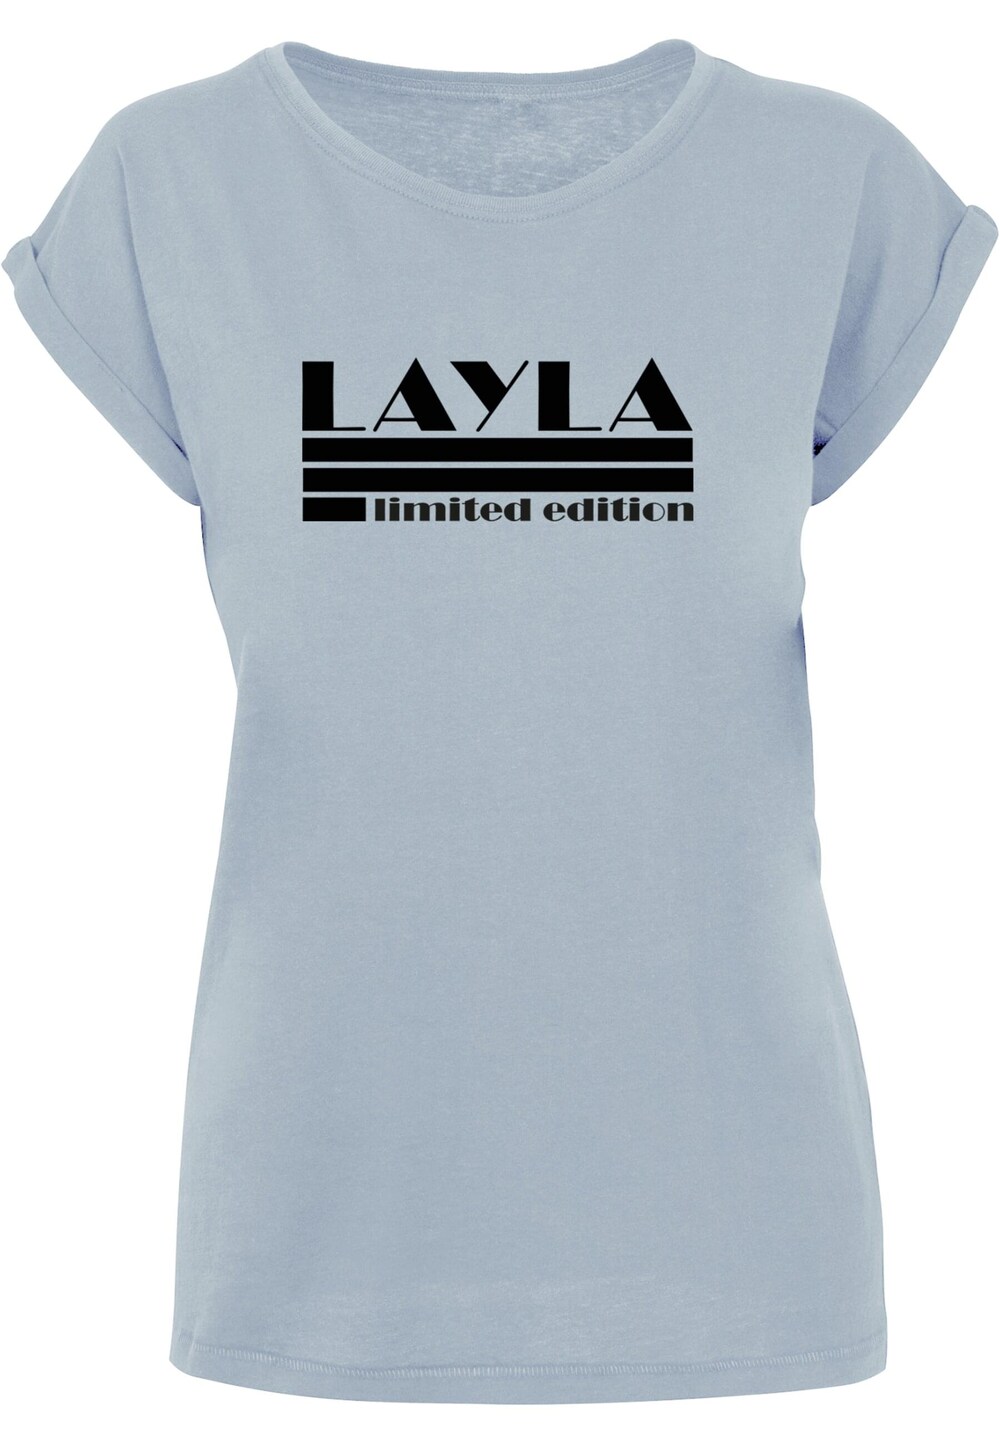 Рубашка Merchcode Layla, синий